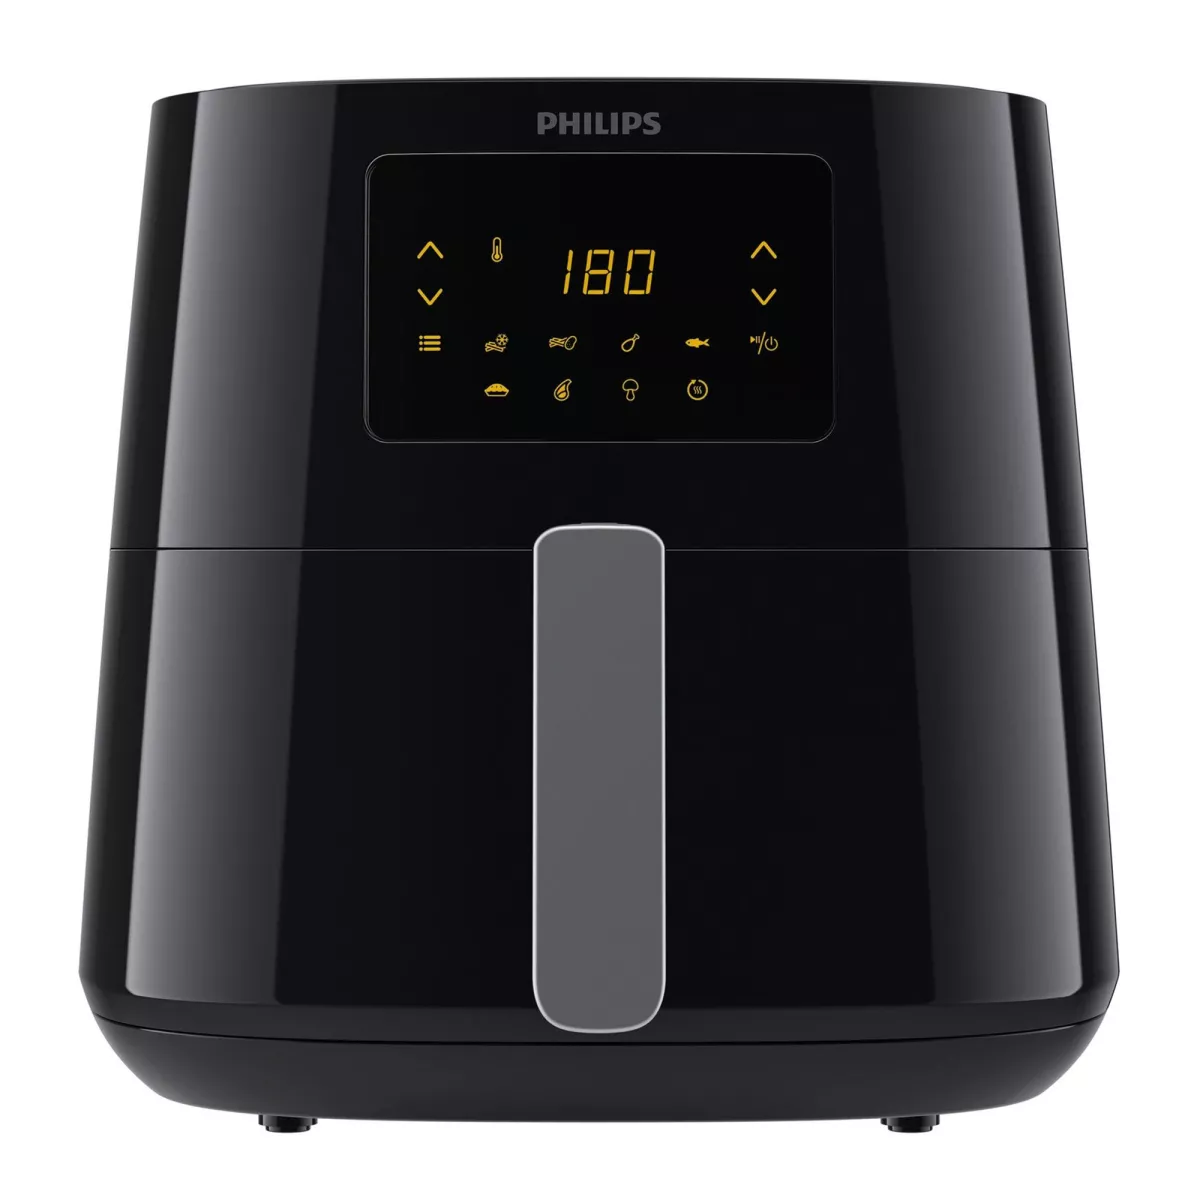 #1 - Philips HD9270/70 Spectre XL Airfryer